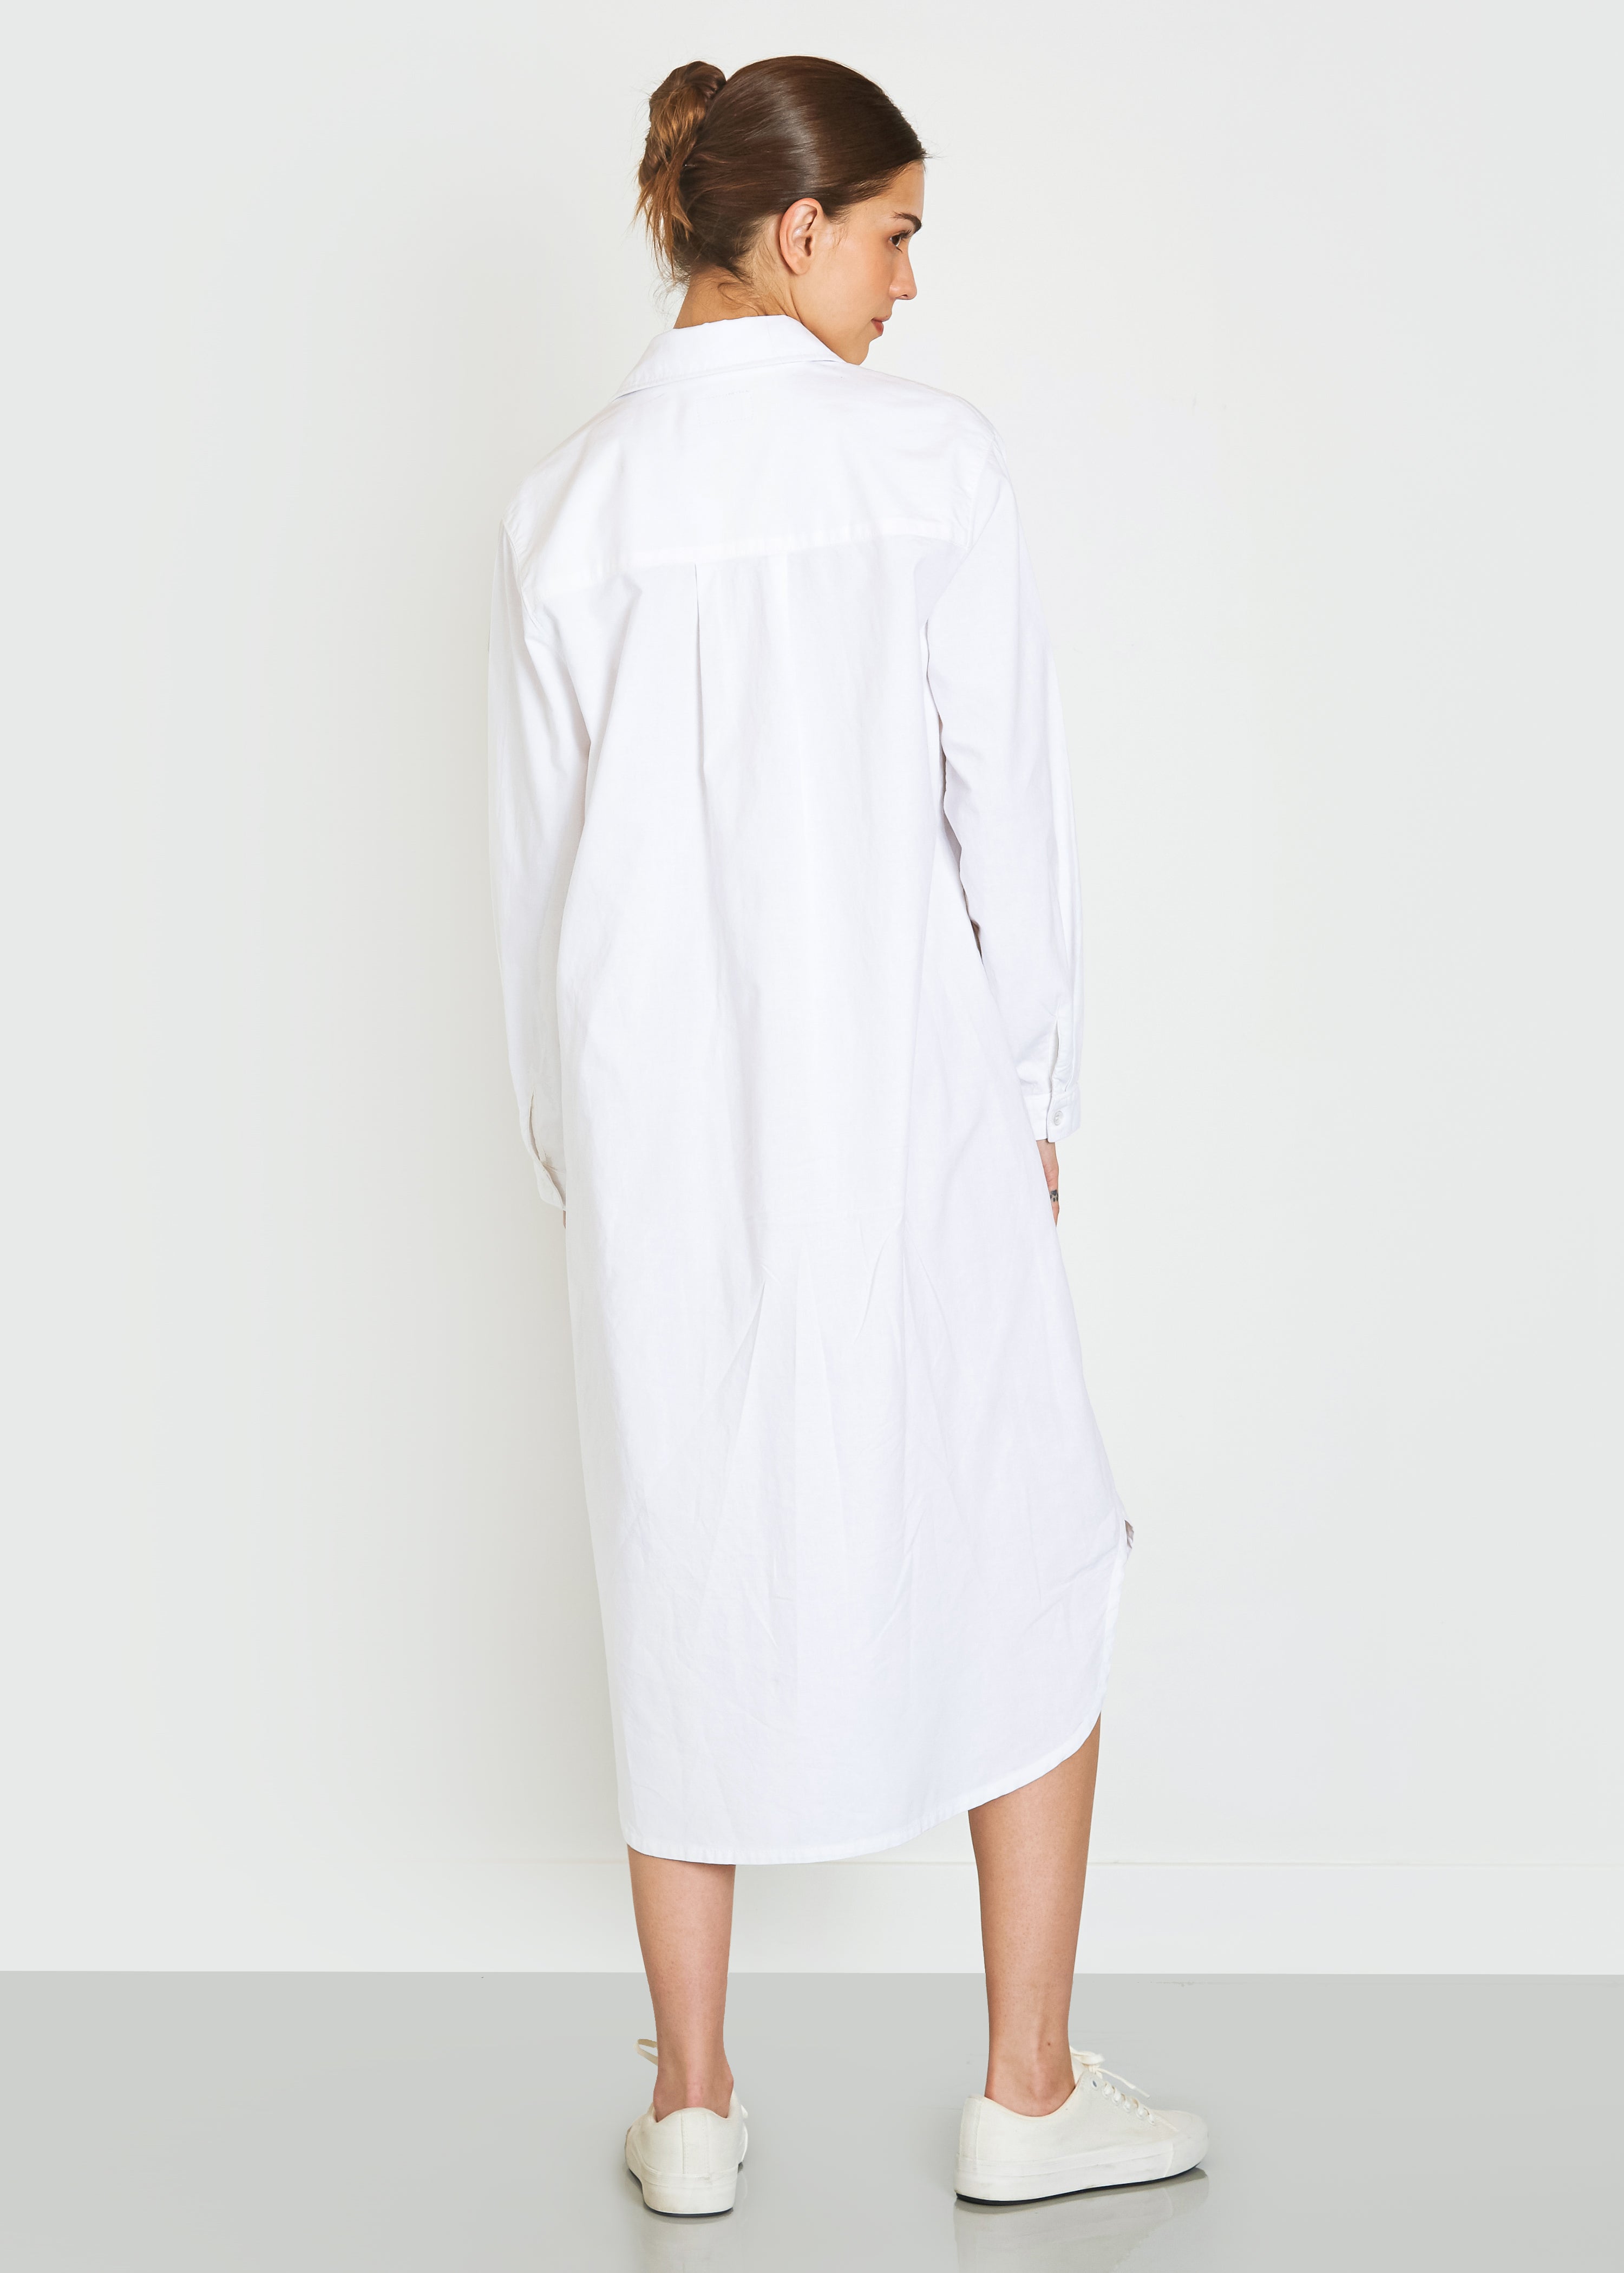 Makenzie Linen Shirt Dress In White - Noend Denim